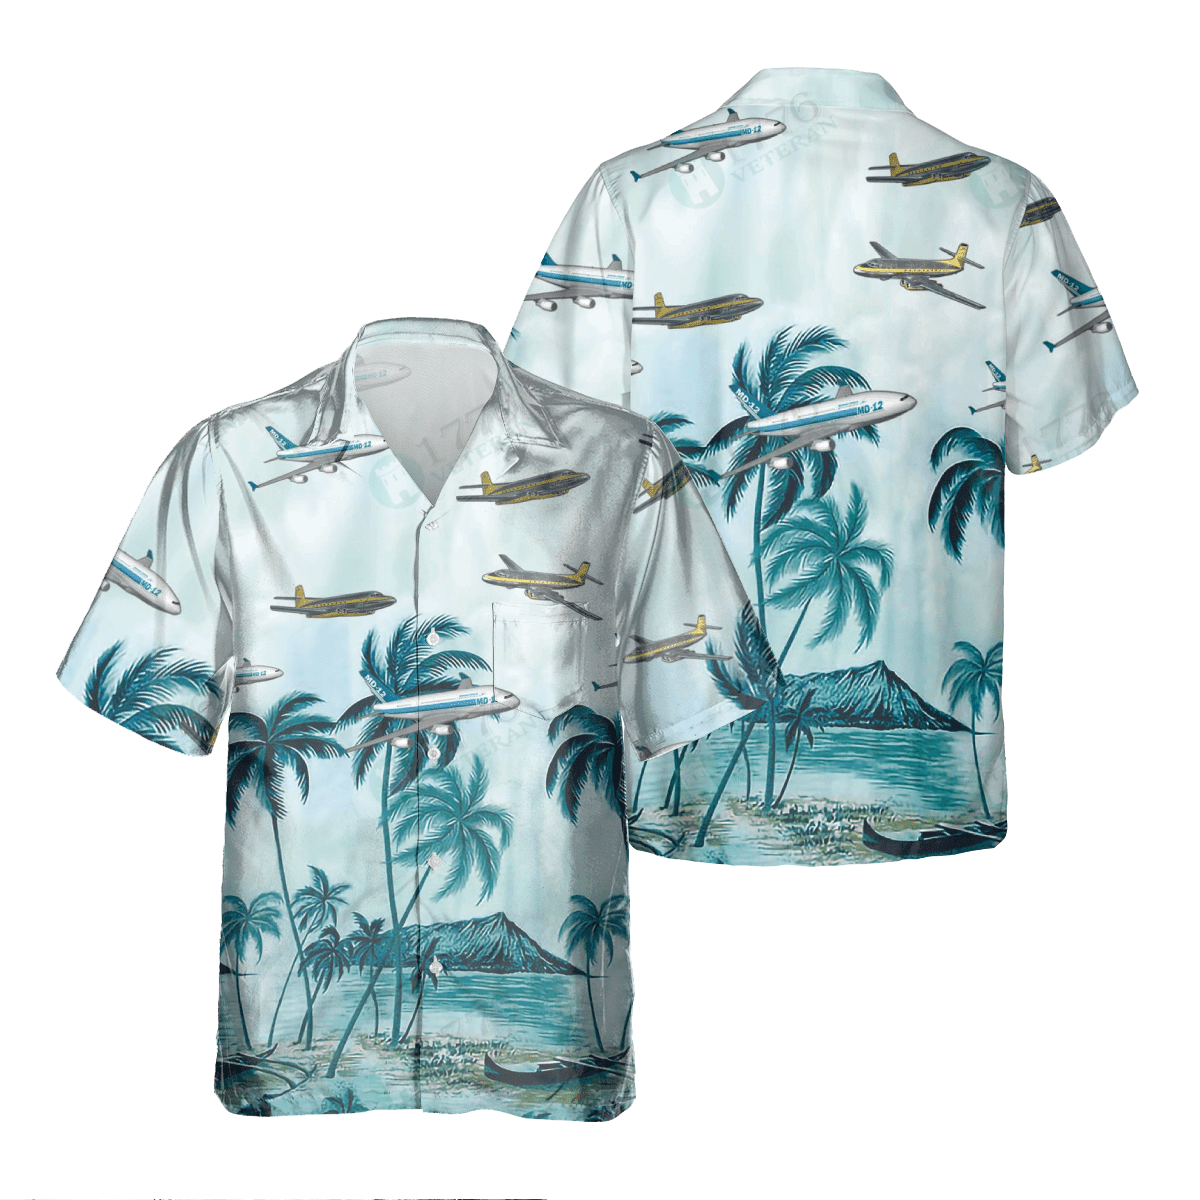 Avro Jetliner Pocket Hawaiian Shirt/ Hawaiian Shirt for Men Dad Veteran/ Patriot Day